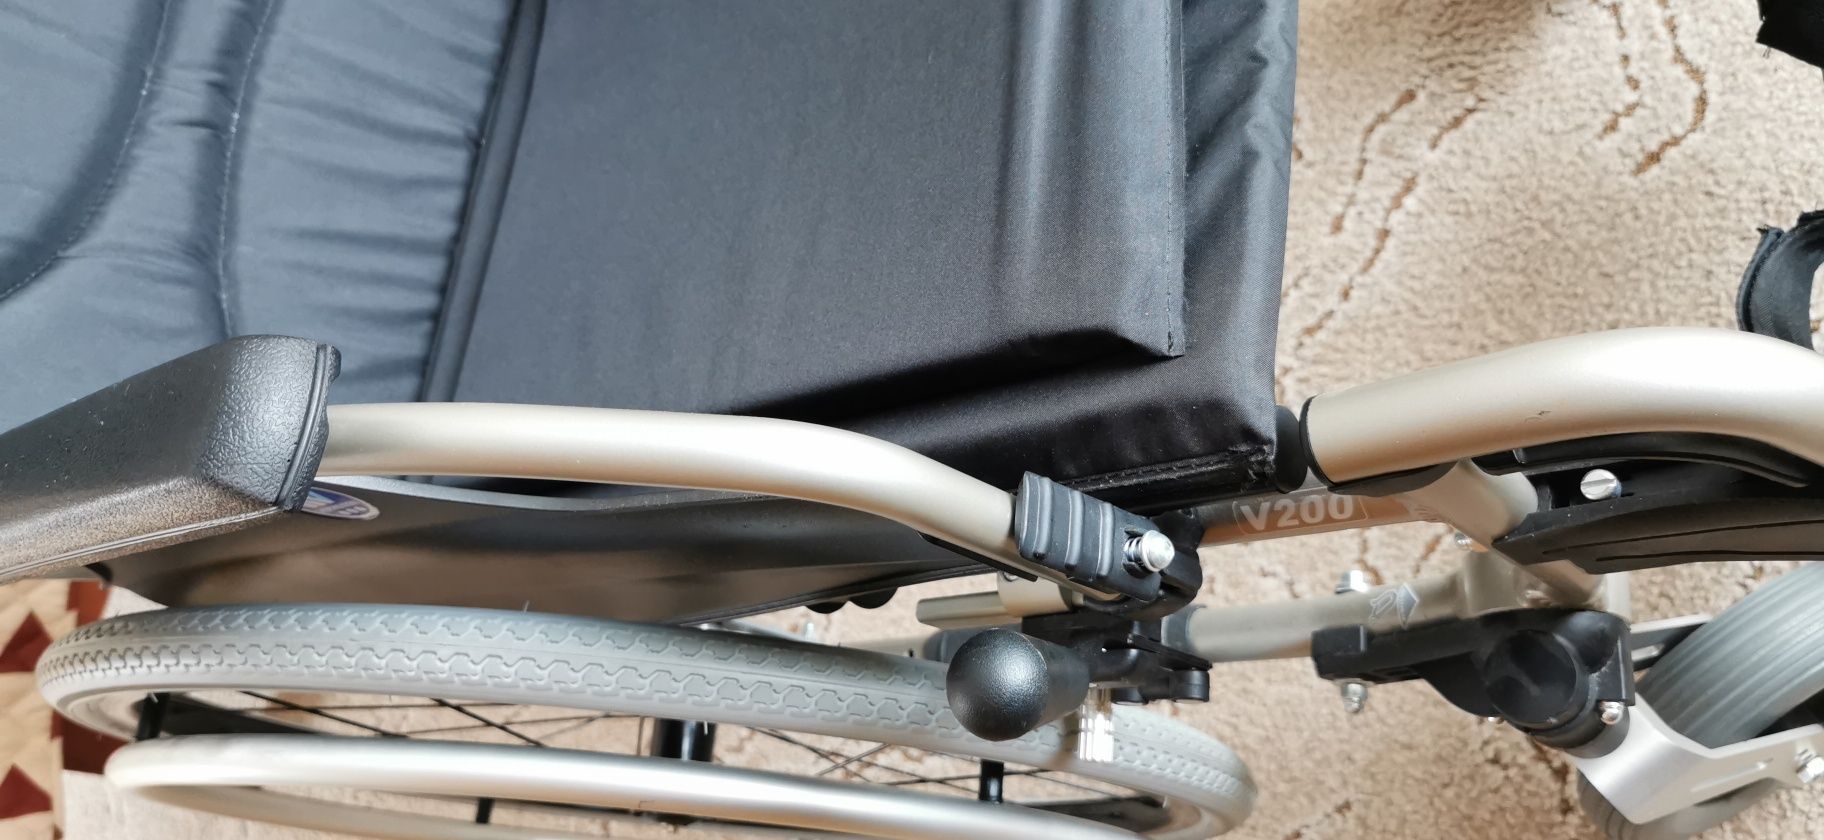 Wózek inwalidzki Vermeireb v200. Nowy